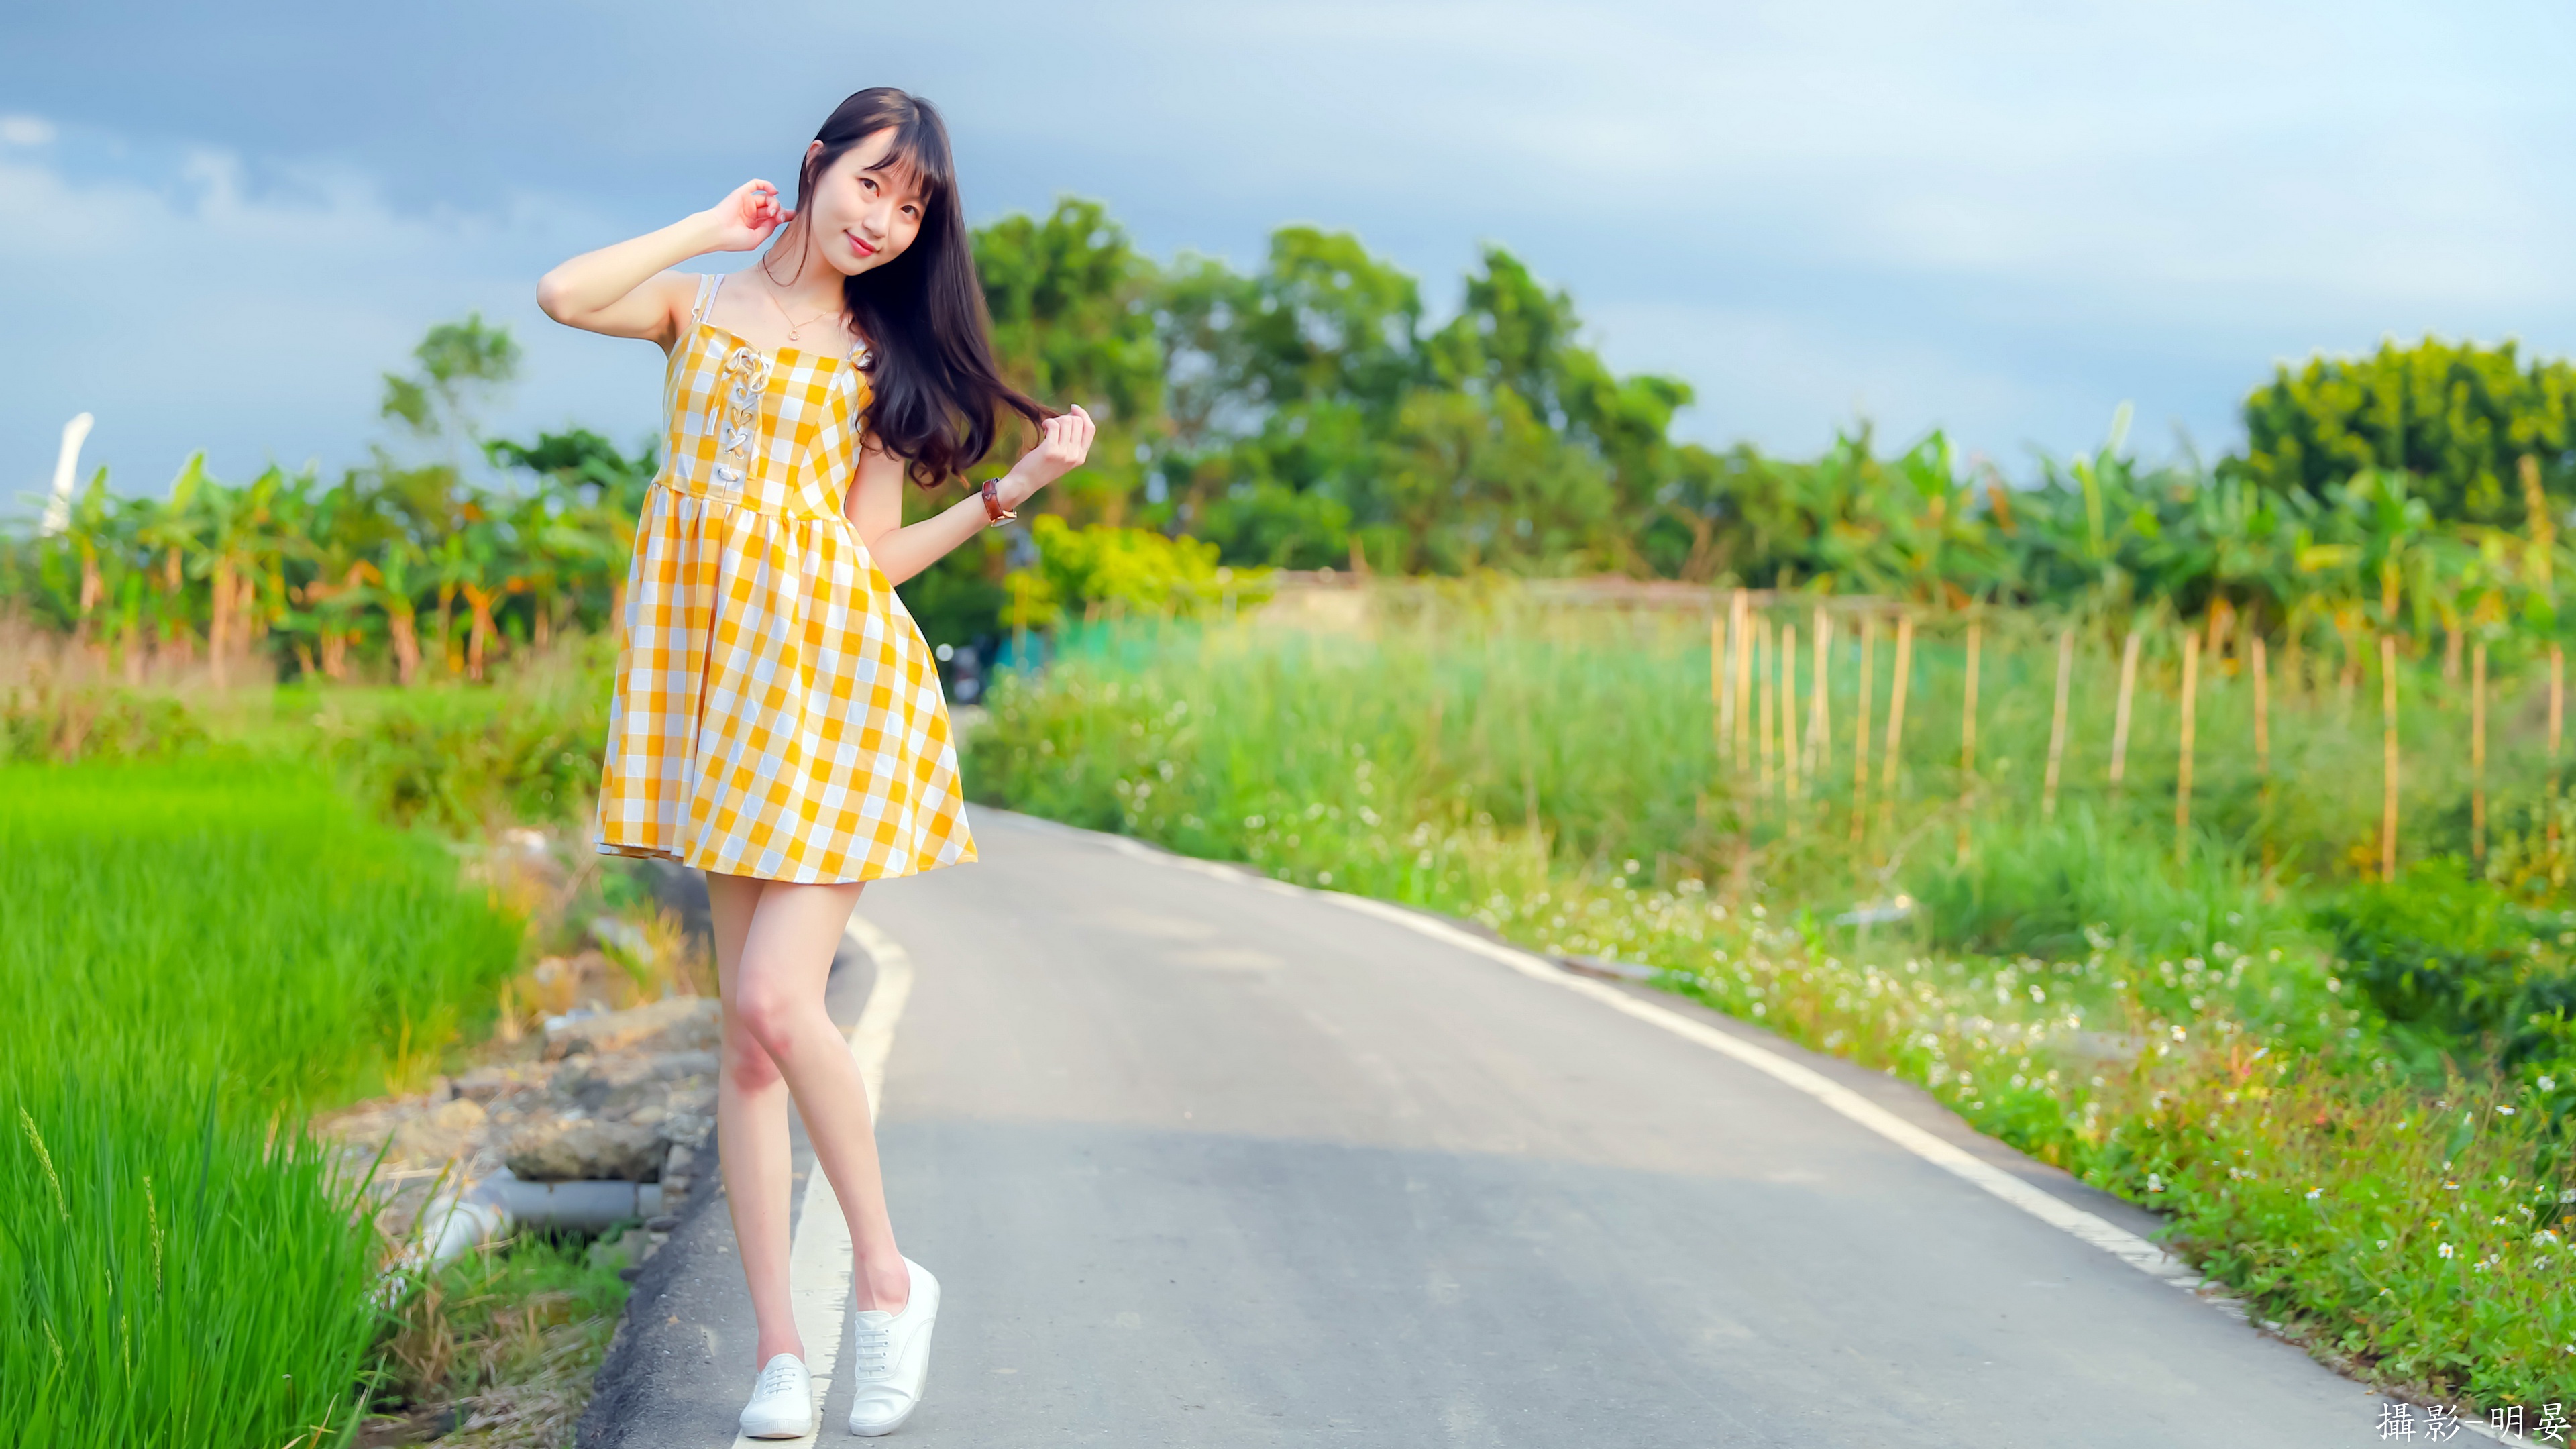 Asian Women Standing Model Women Outdoors Road Asphalt Dress Summer